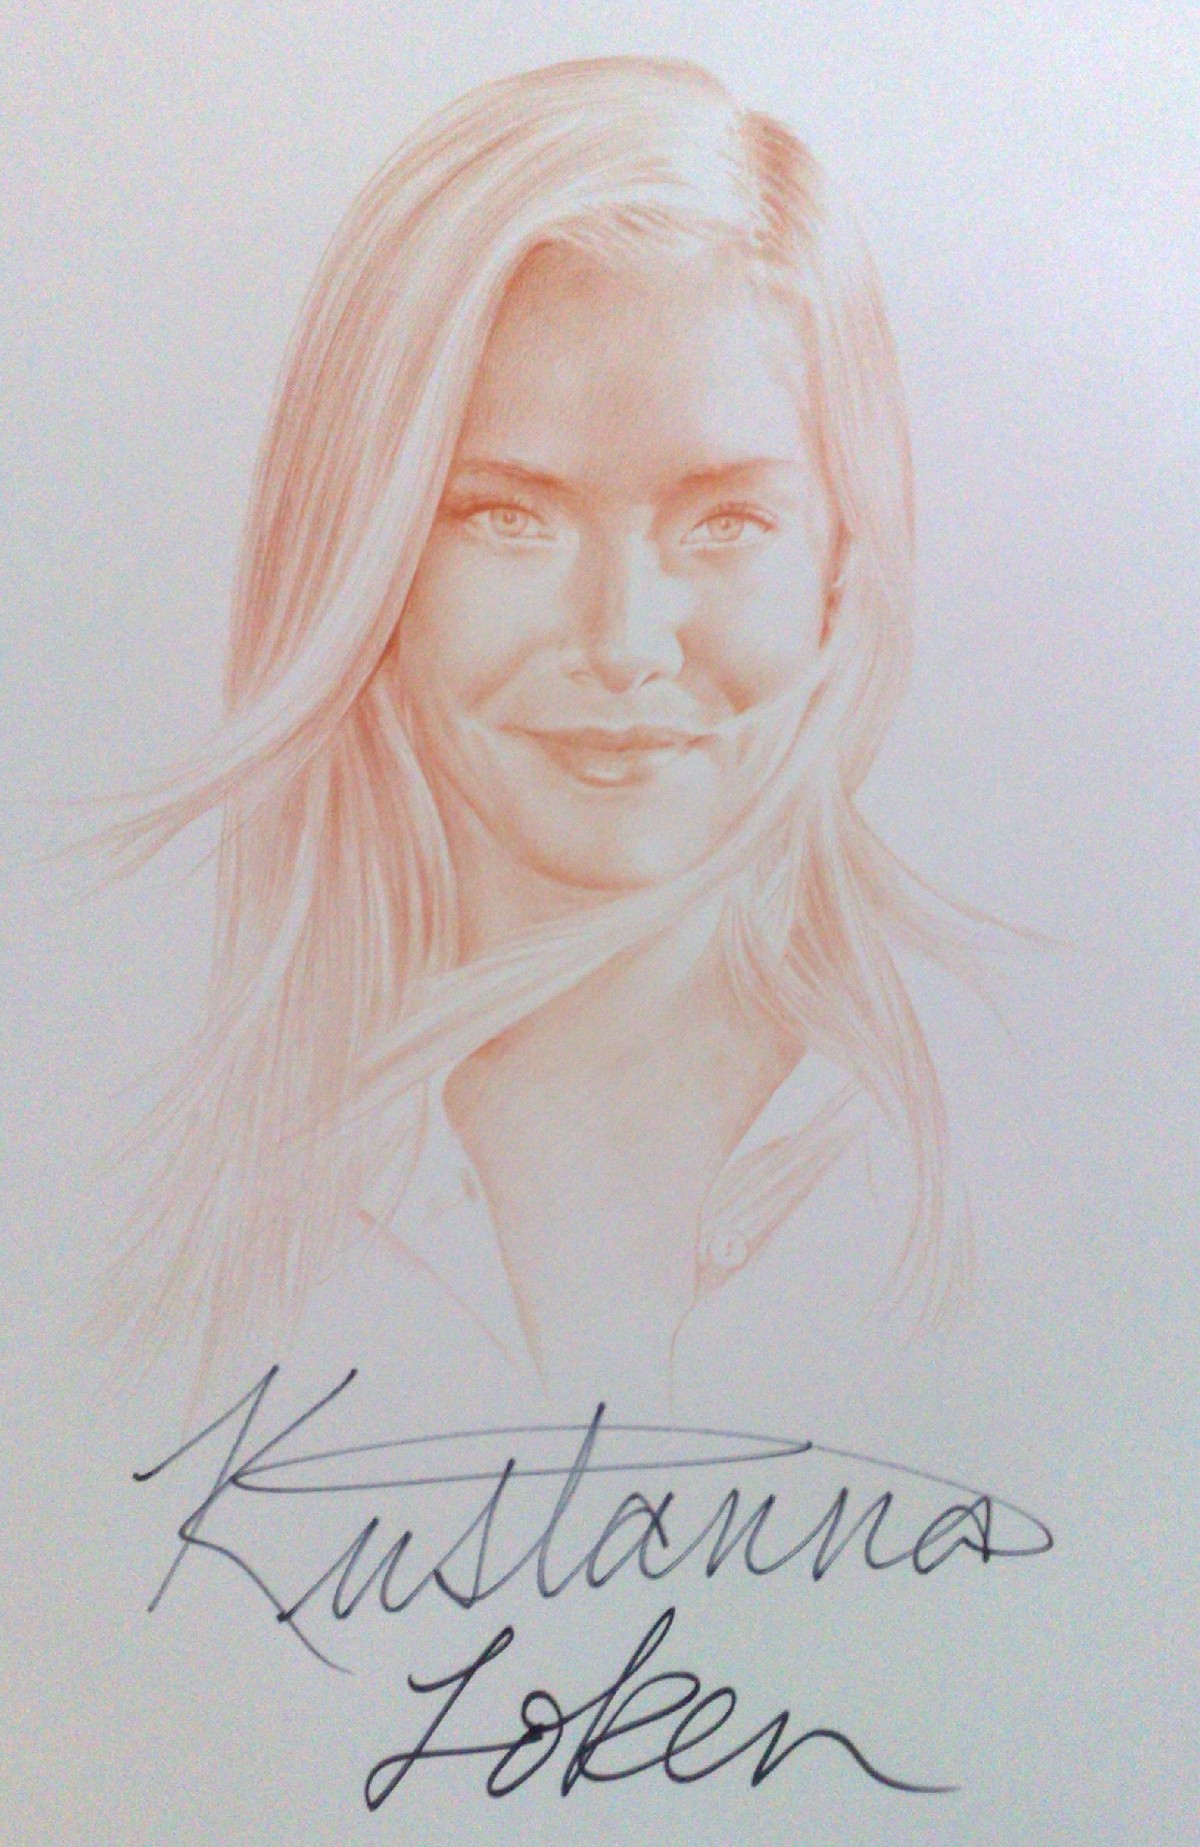 Kristanna Loken Jole Stamenkovic signedportraits